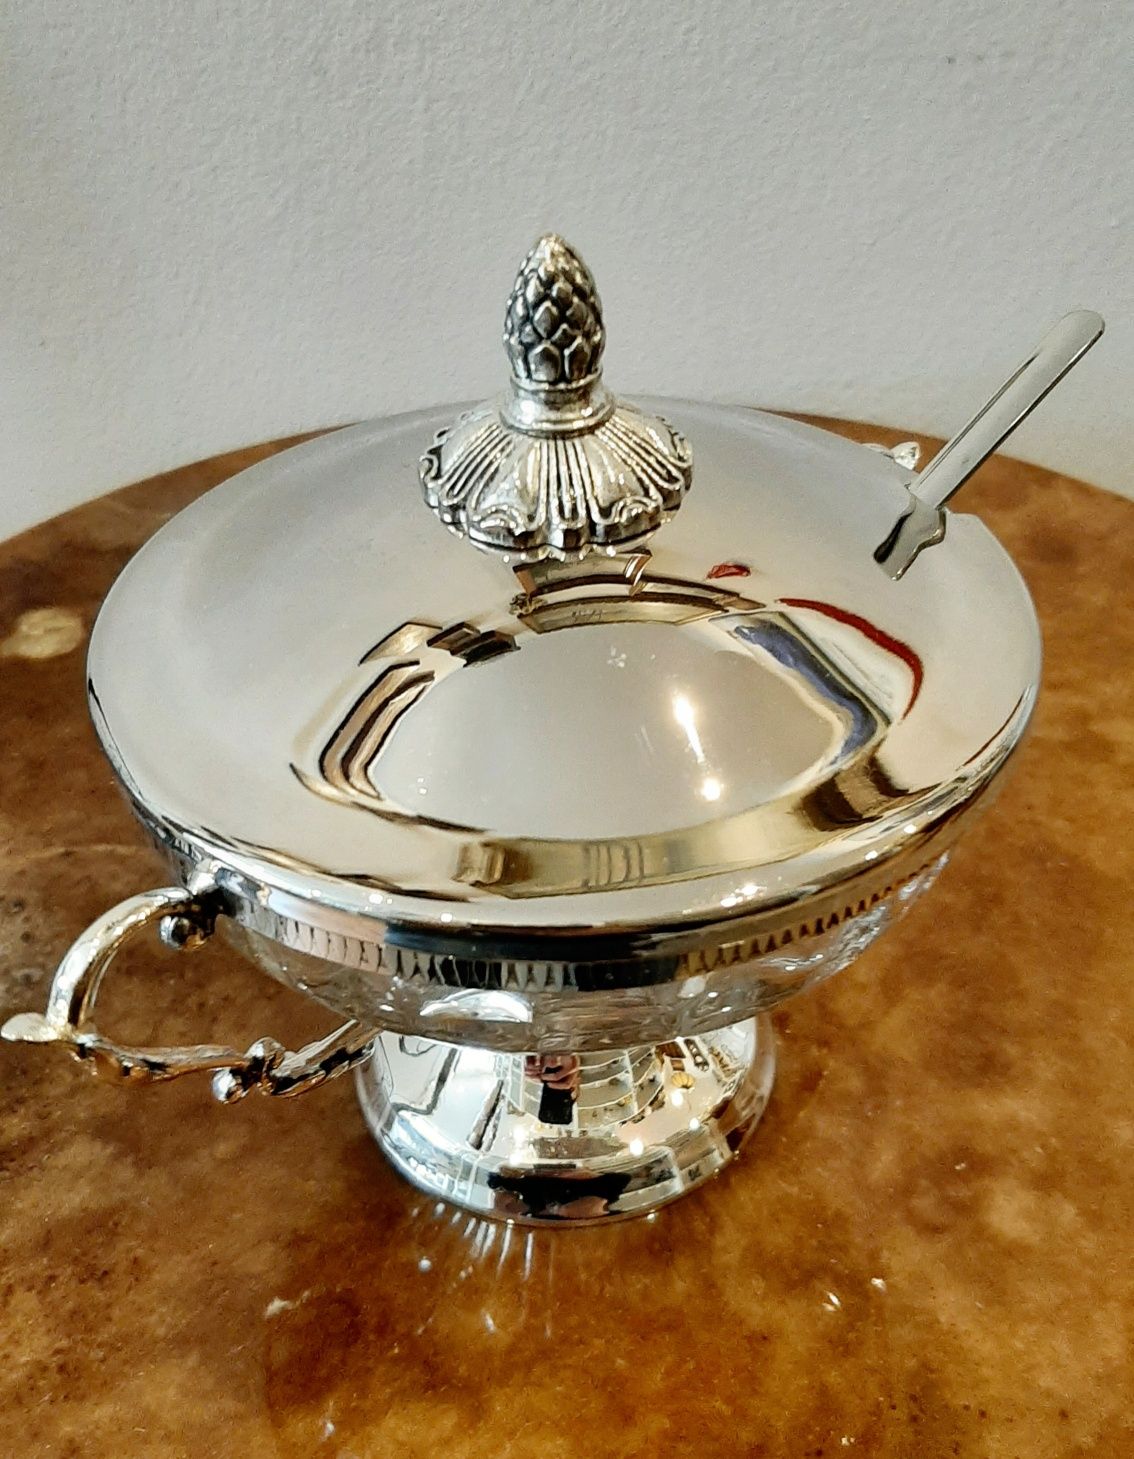 Śliczna Cukiernica srebrzona z łyżeczką i szklanym wkładem ornamenty